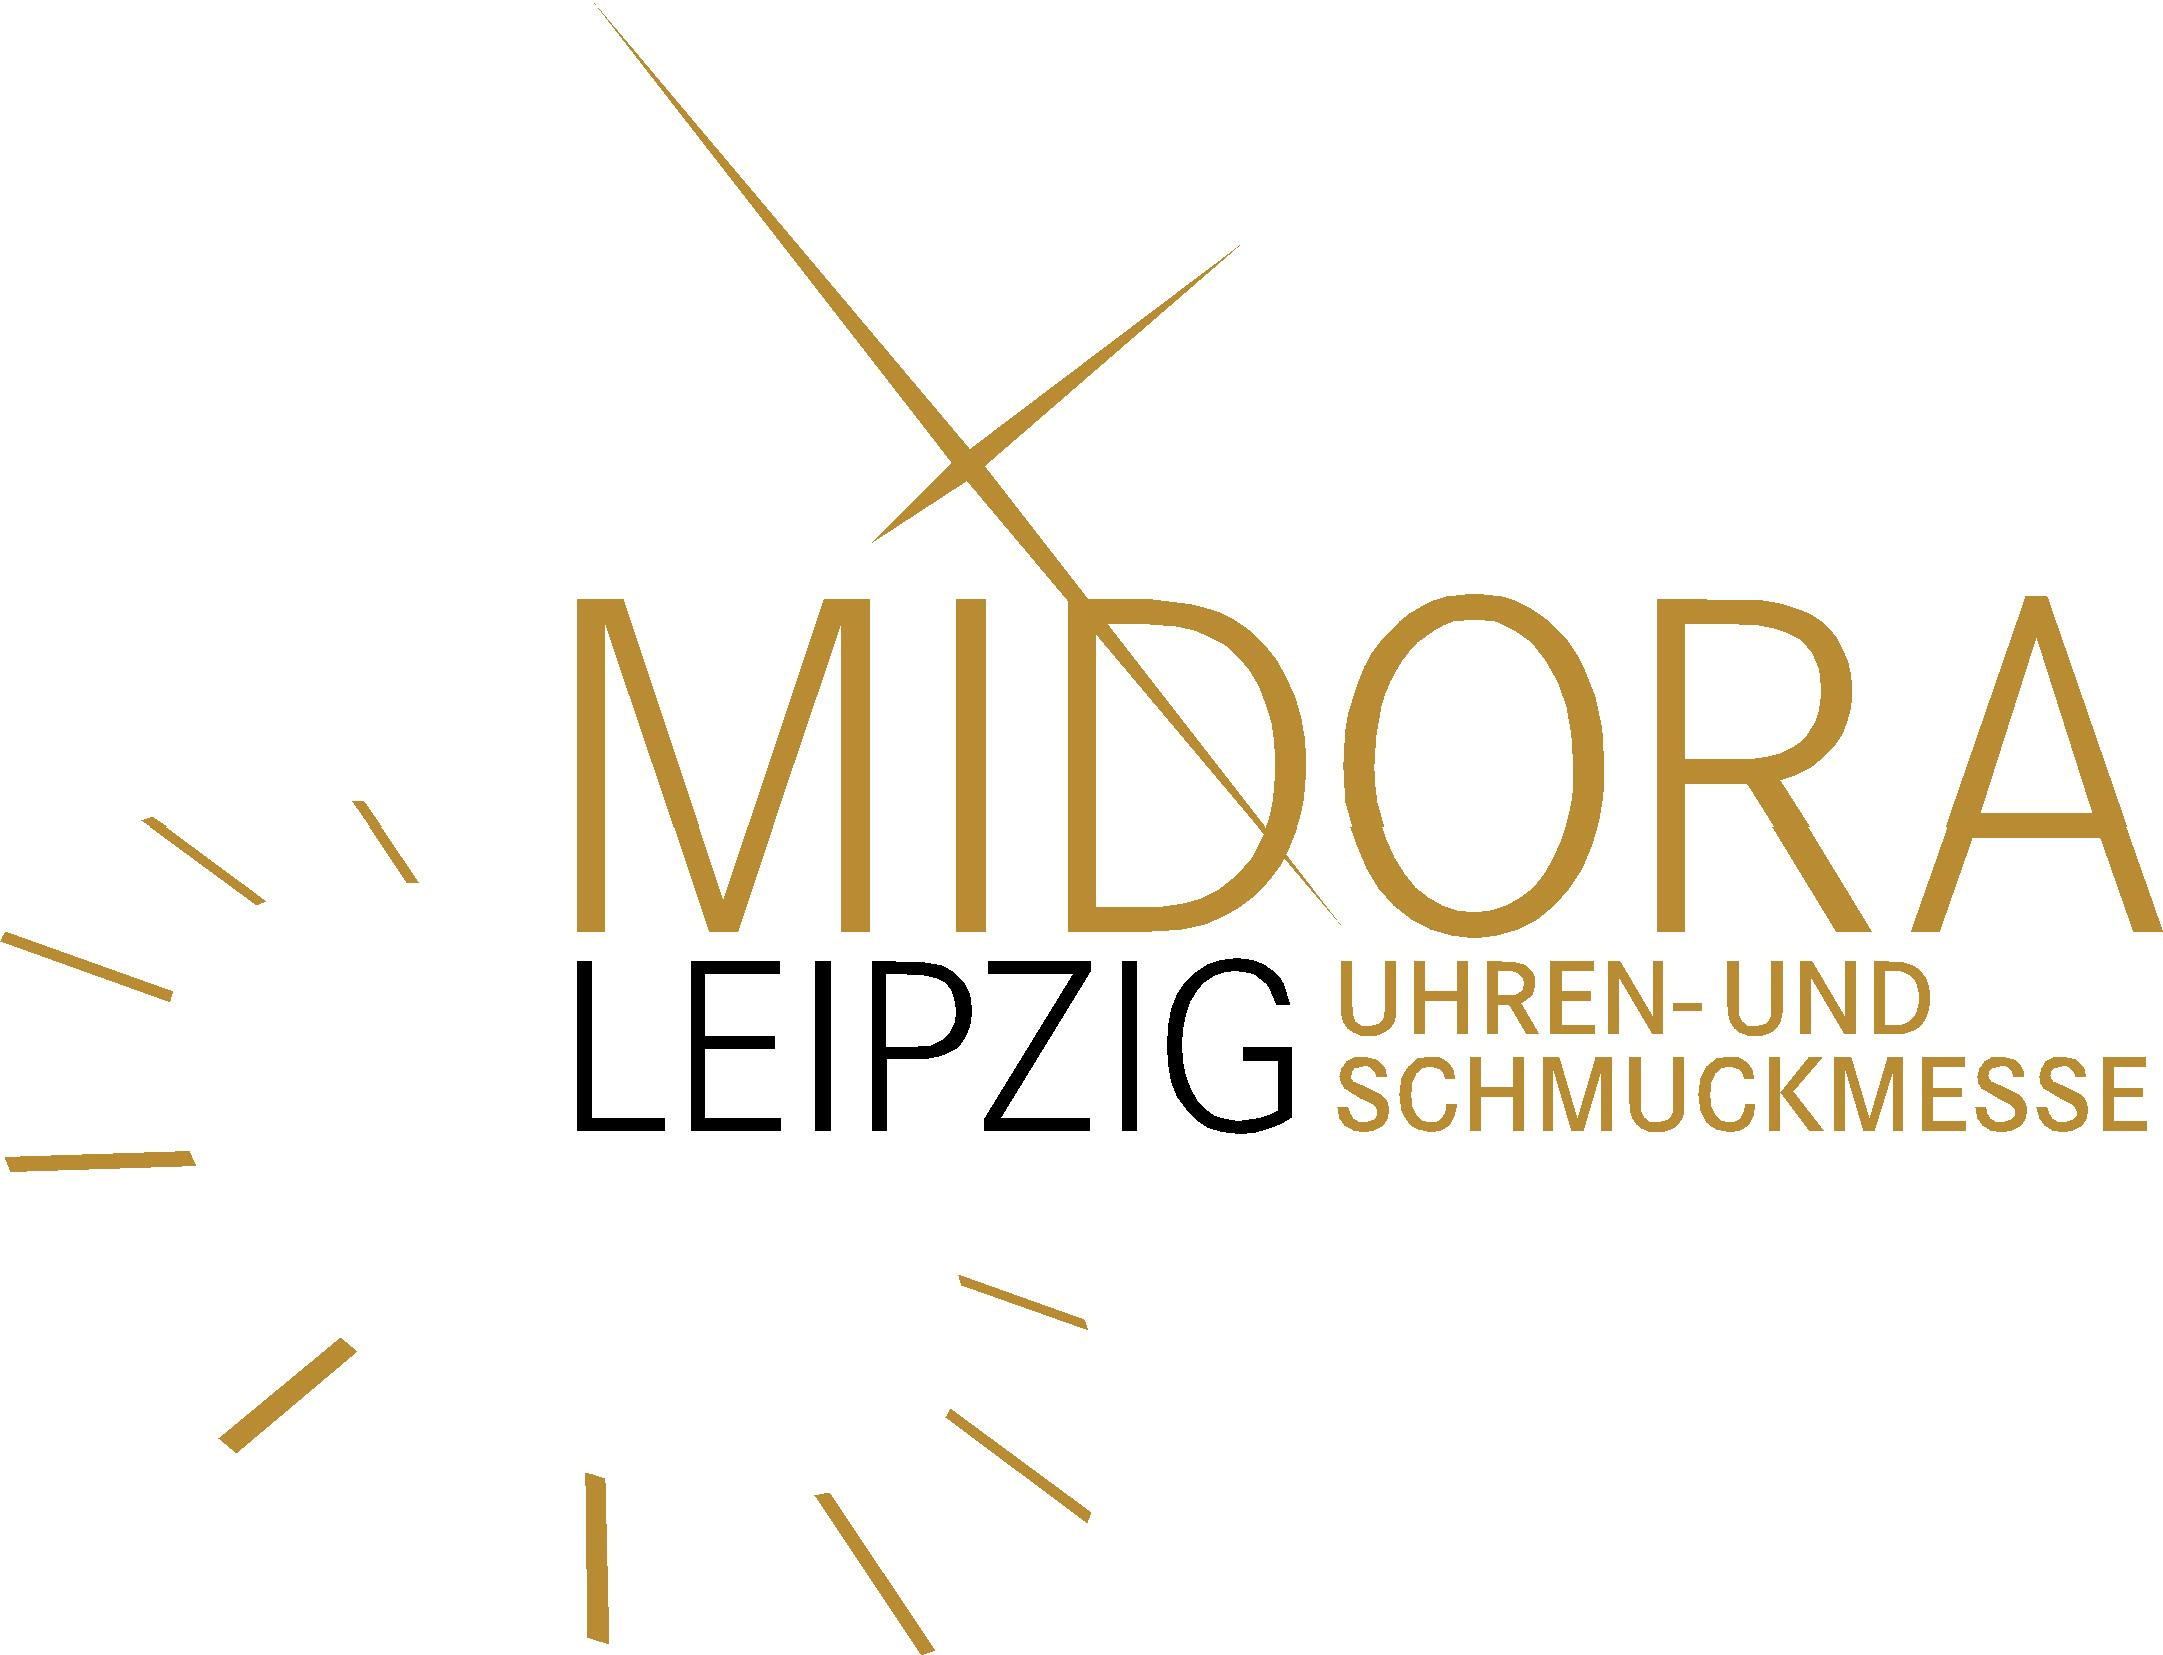 Midora Leipzig